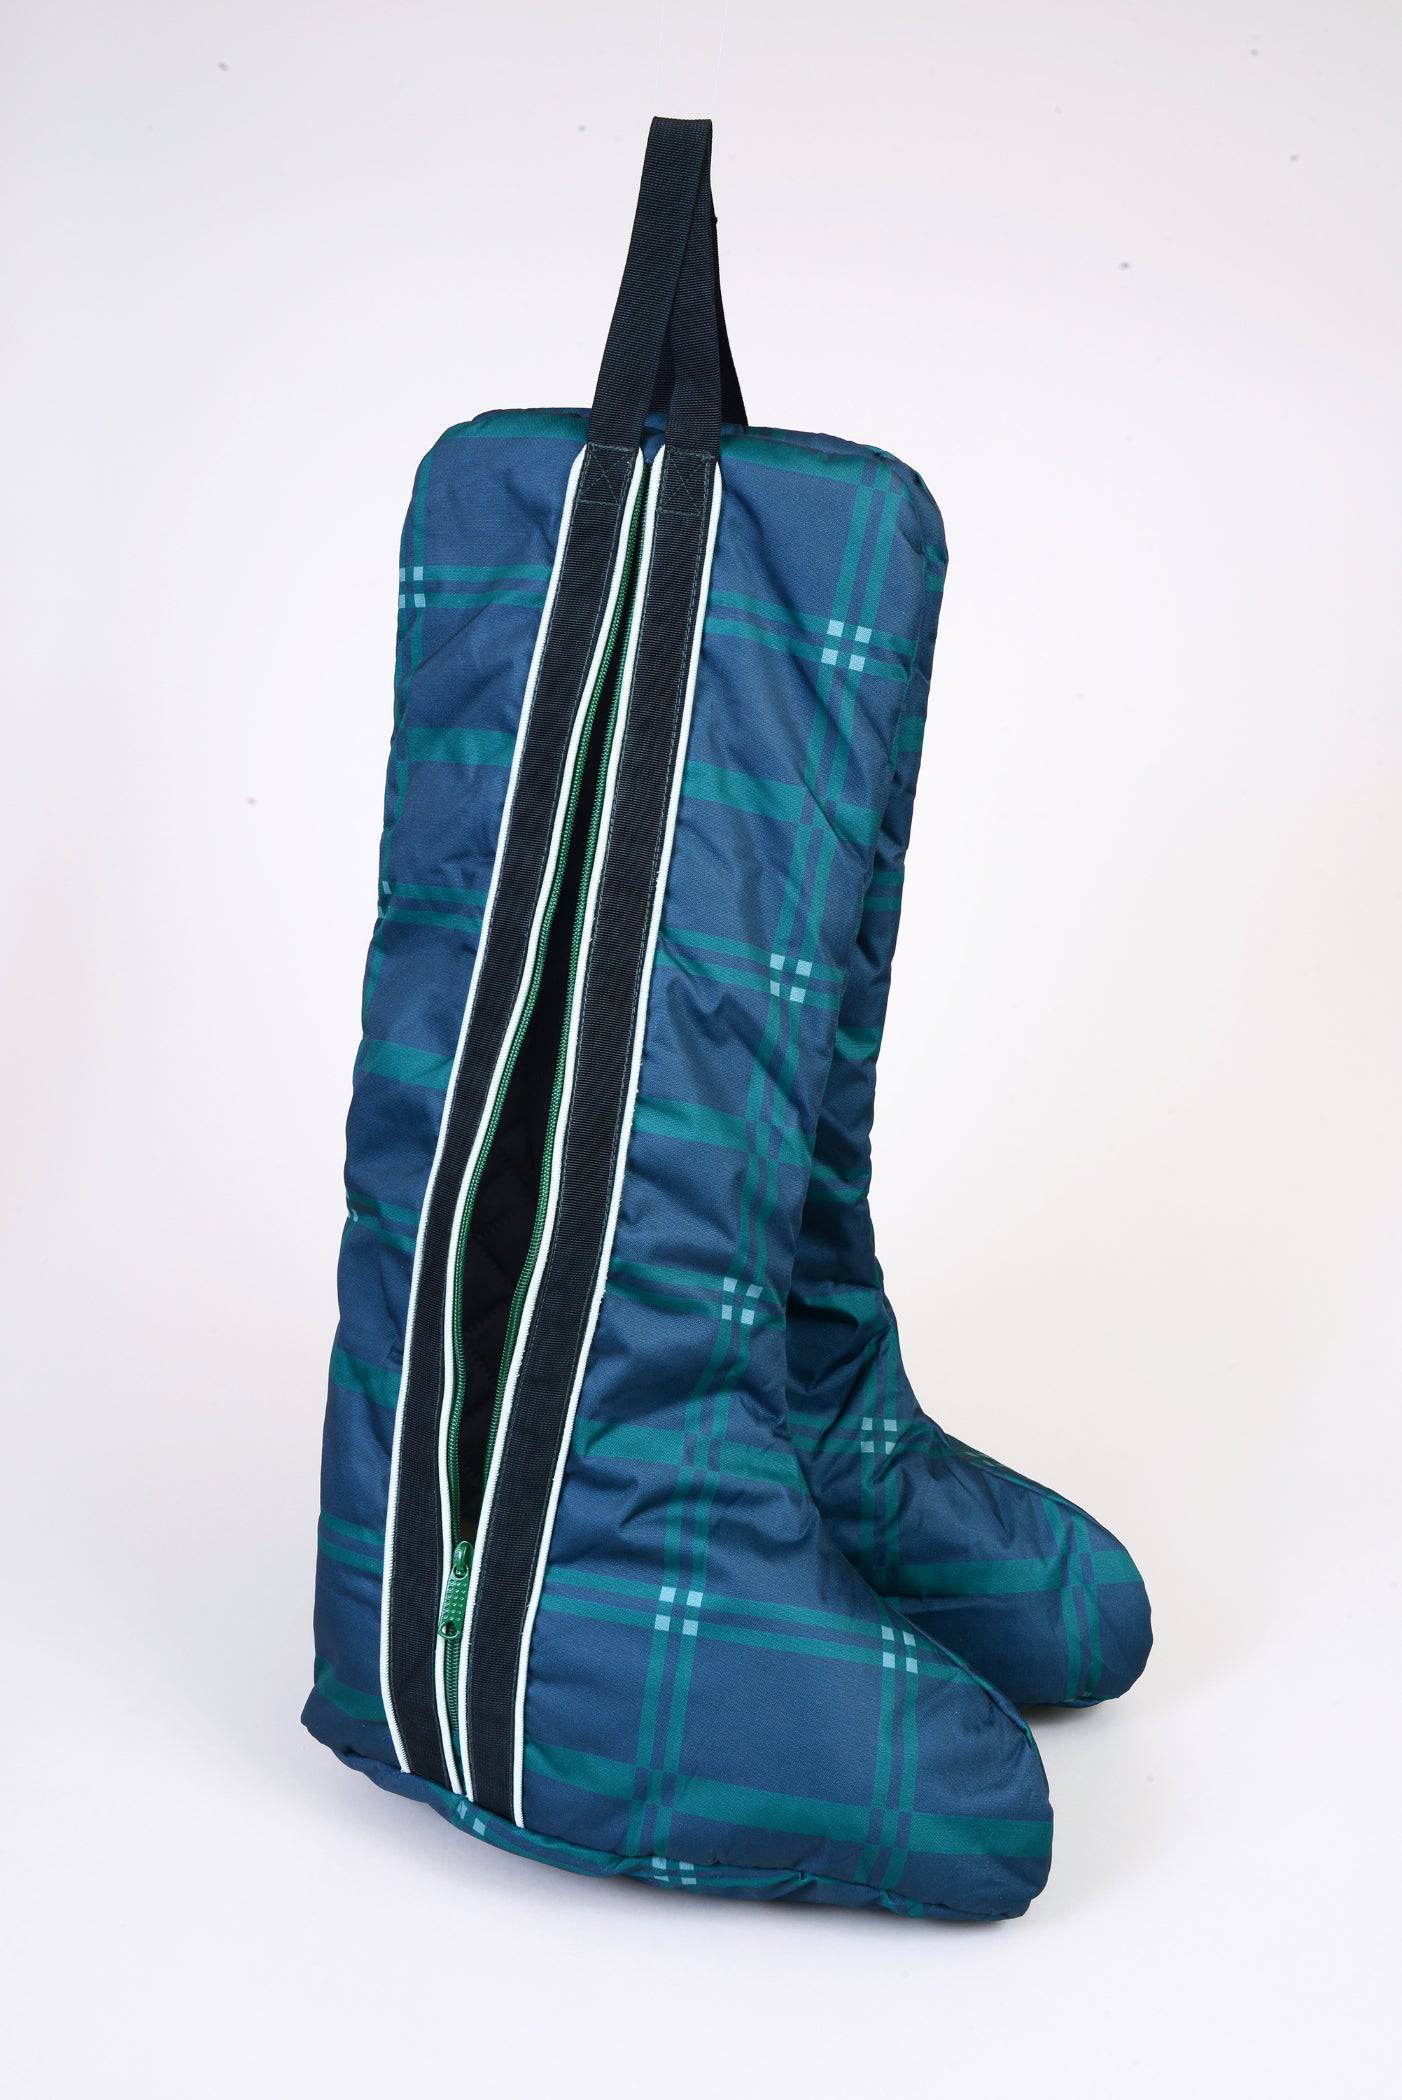 Chestnut Bay Quilted Boot Bag - Equine Exchange Tack Shop